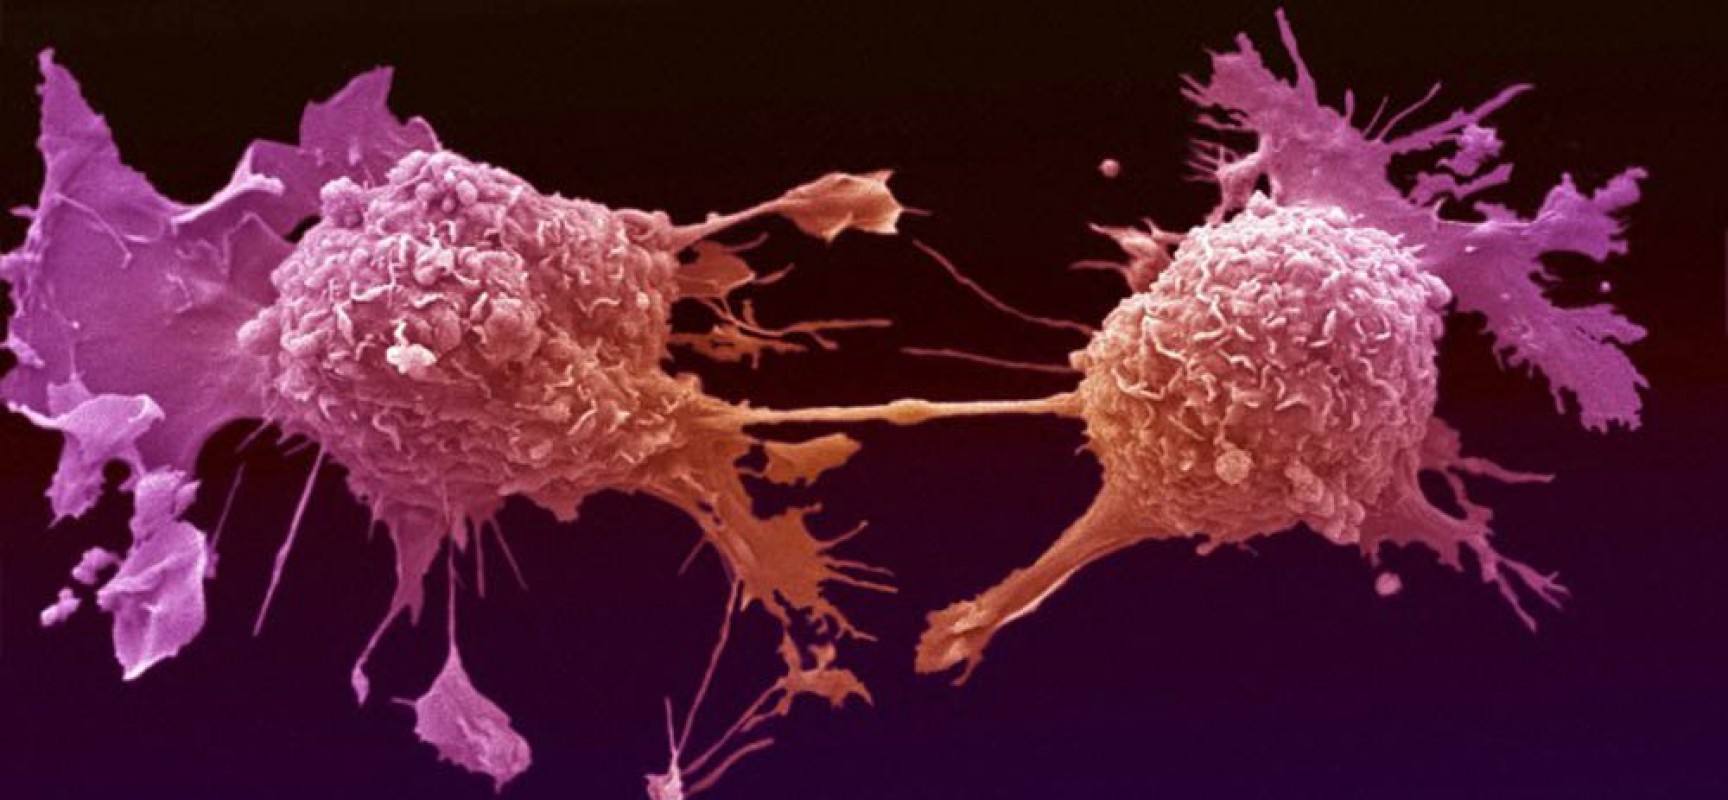 Έλληνες ερευνητές βρήκαν πρωτεΐνη η οποία μπορεί να εξοντώσει τα καρκινικά κύτταρα (φωτό)